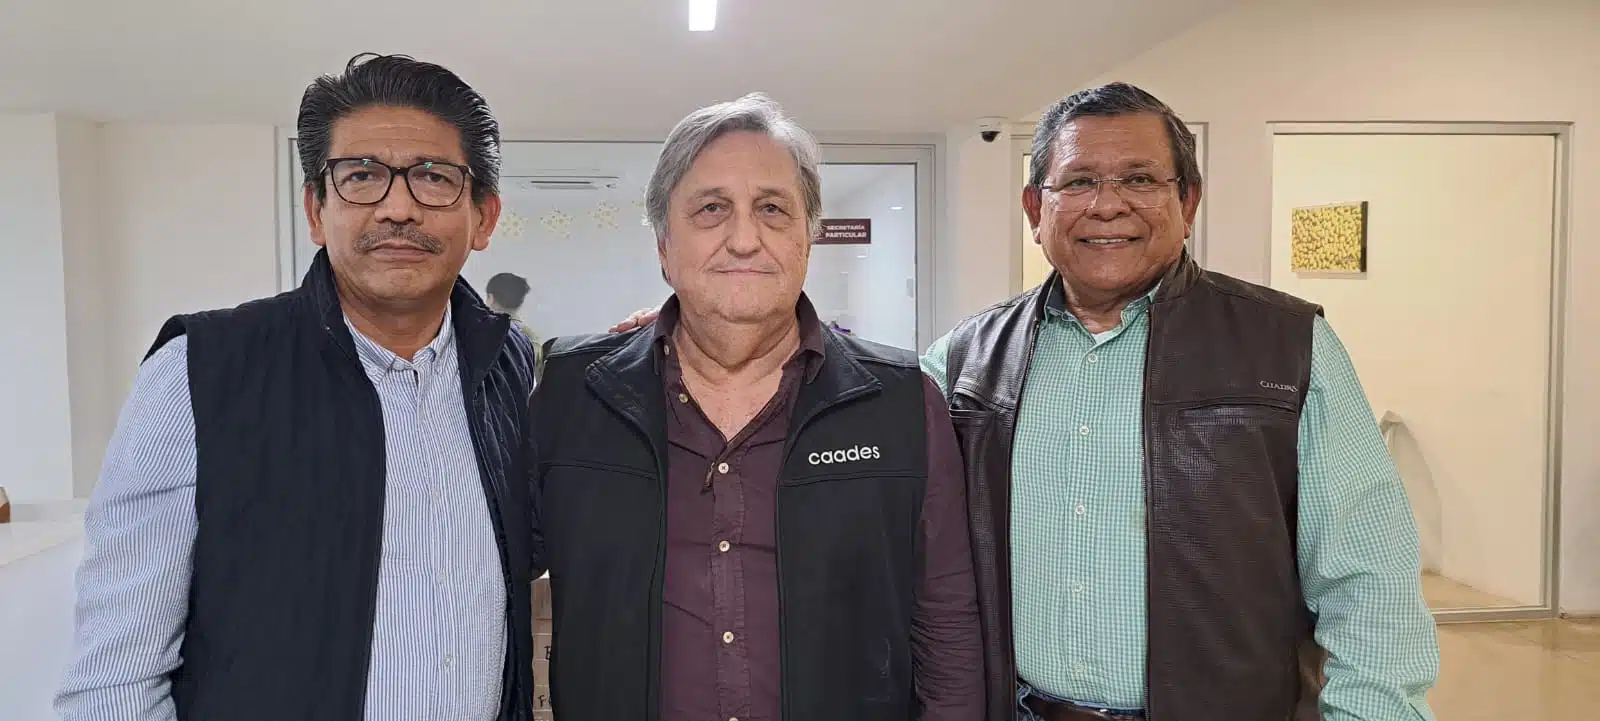 secretario de Agricultura, Jaime Montes Salas, el alcalde de Guasave, Martín Ahumada Quintero, y el presidente de Caades, Marte Vega Román